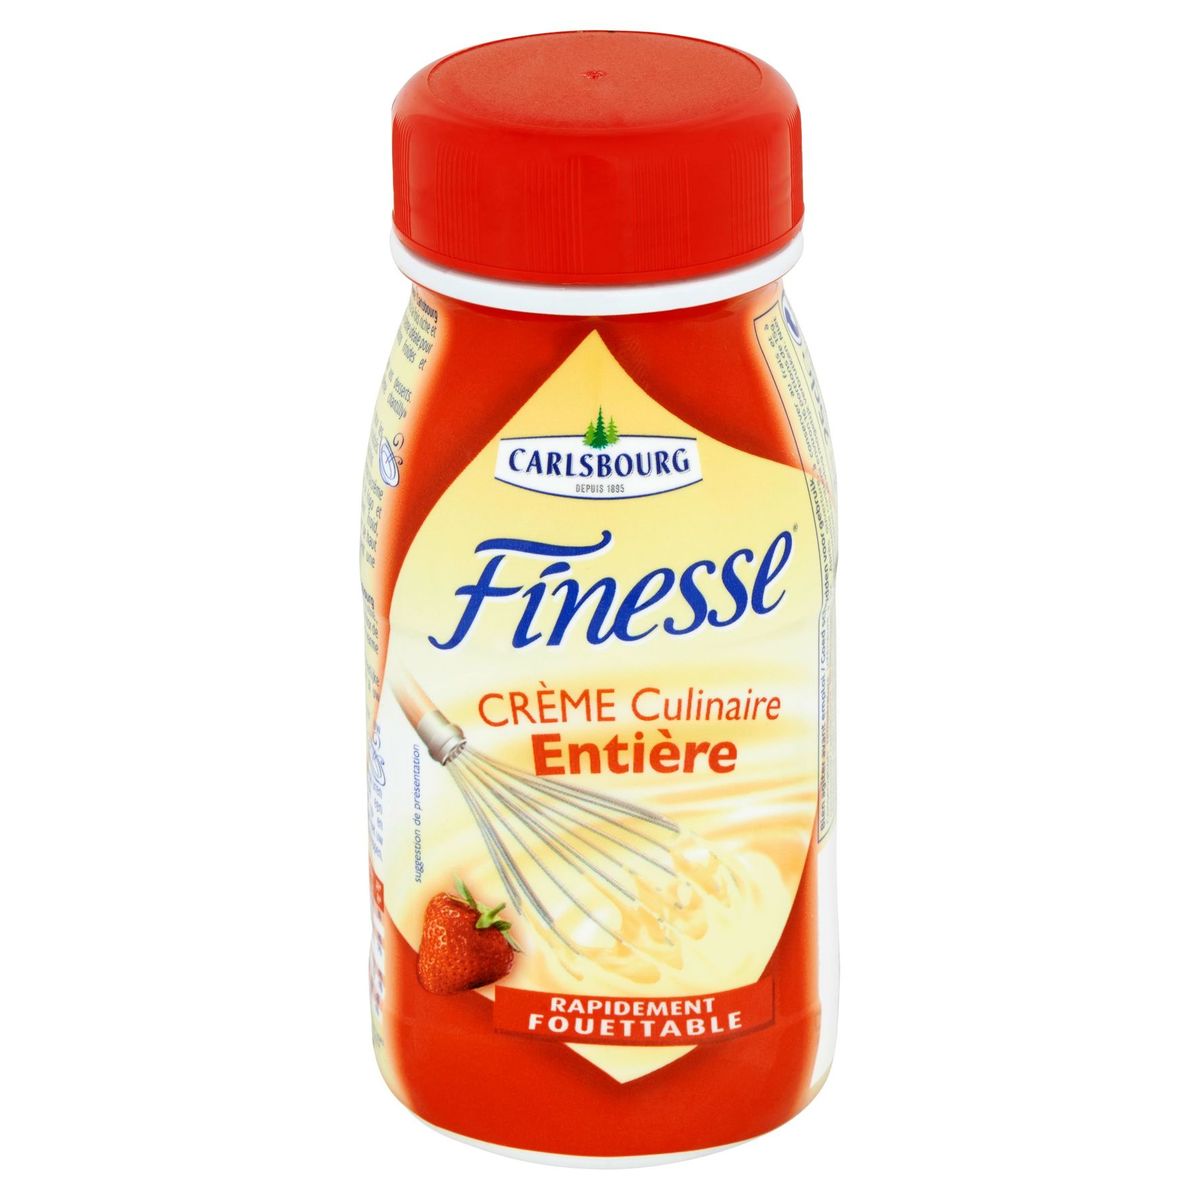 Carlsbourg Finesse Crème Culinaire Entière 25 cl